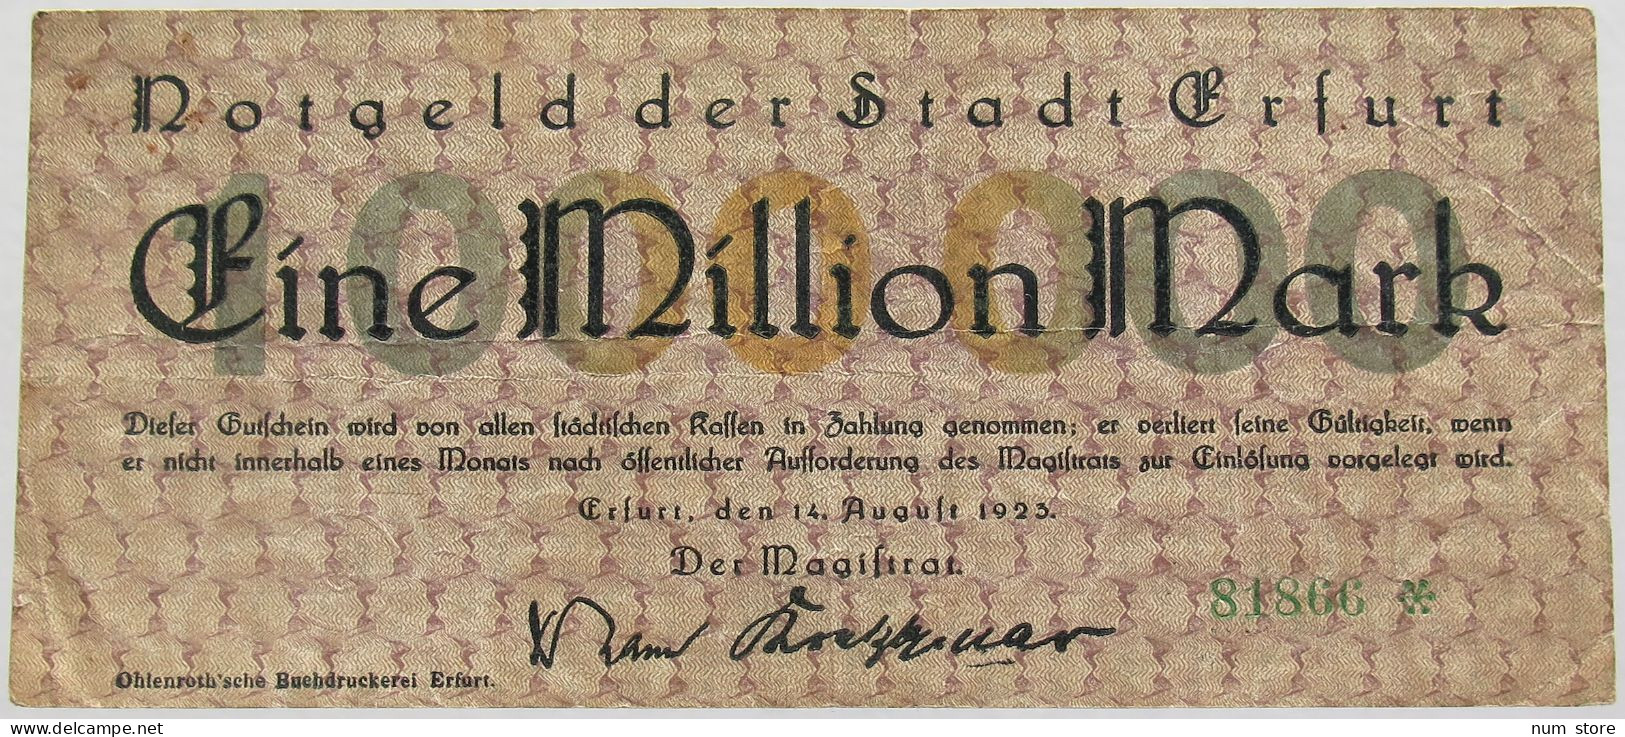 GERMANY 1 MILLION MARK ERFURT #alb010 0153 - 1 Mio. Mark